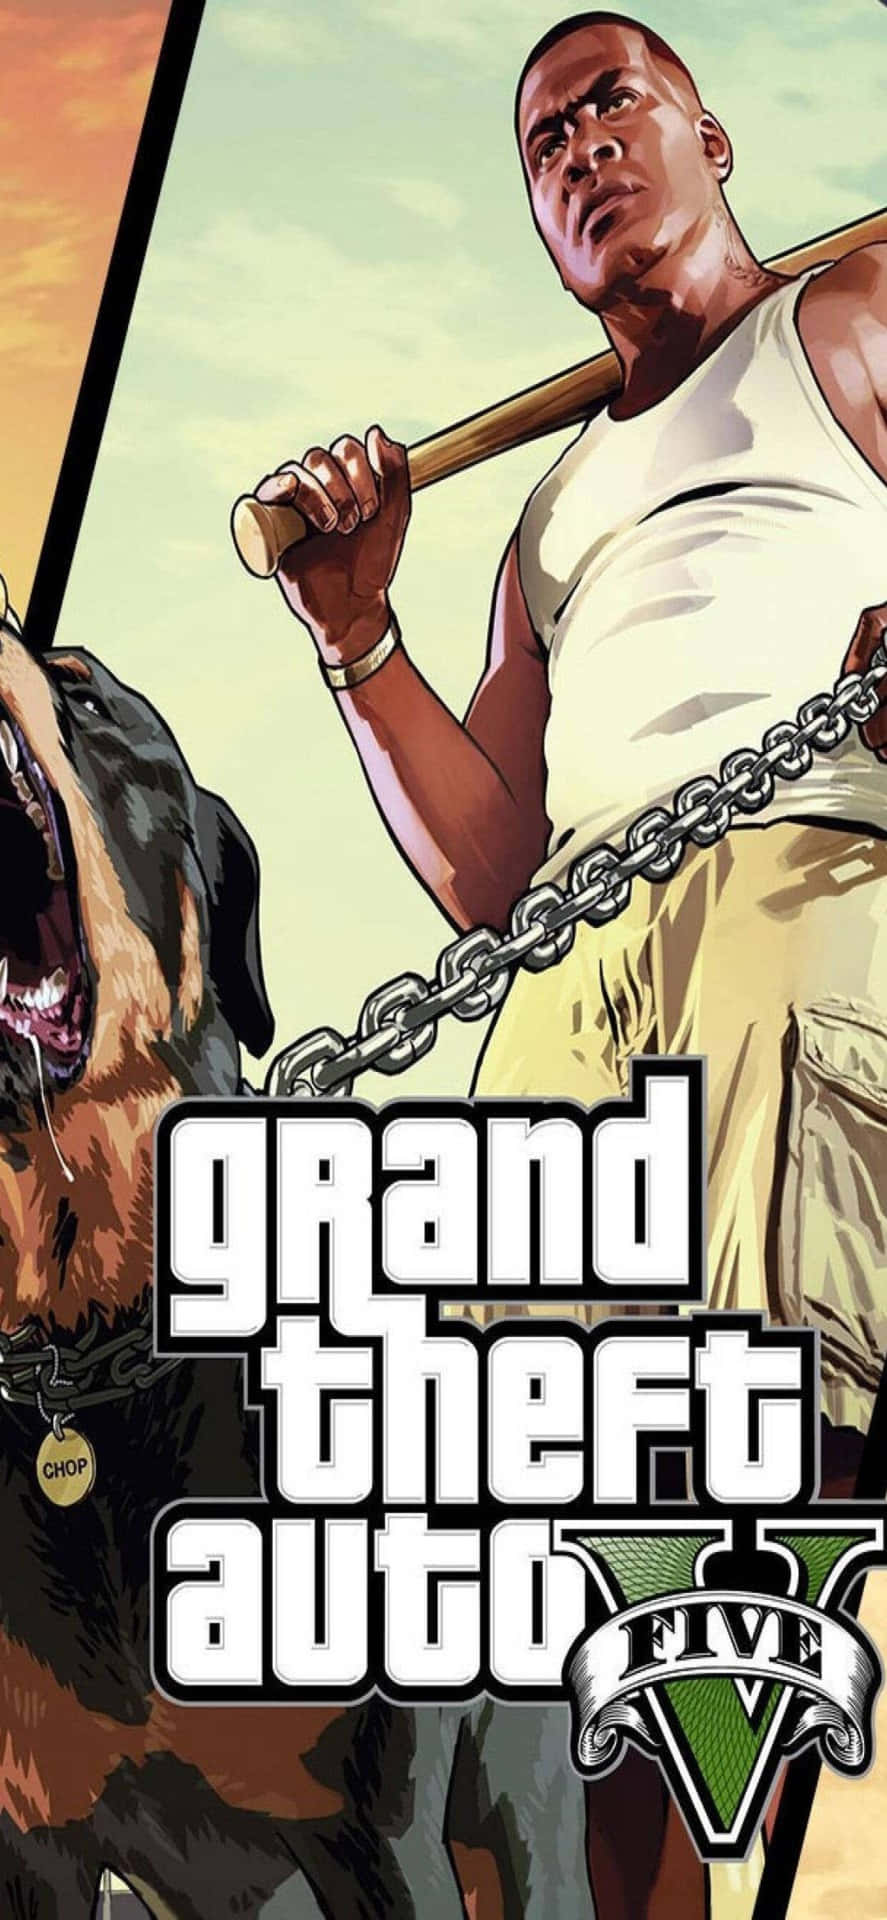 Iphonexs Max Bakgrundsbild Med Grand Theft Auto V Motiv, Featuring Franklin Och Chop-poster.